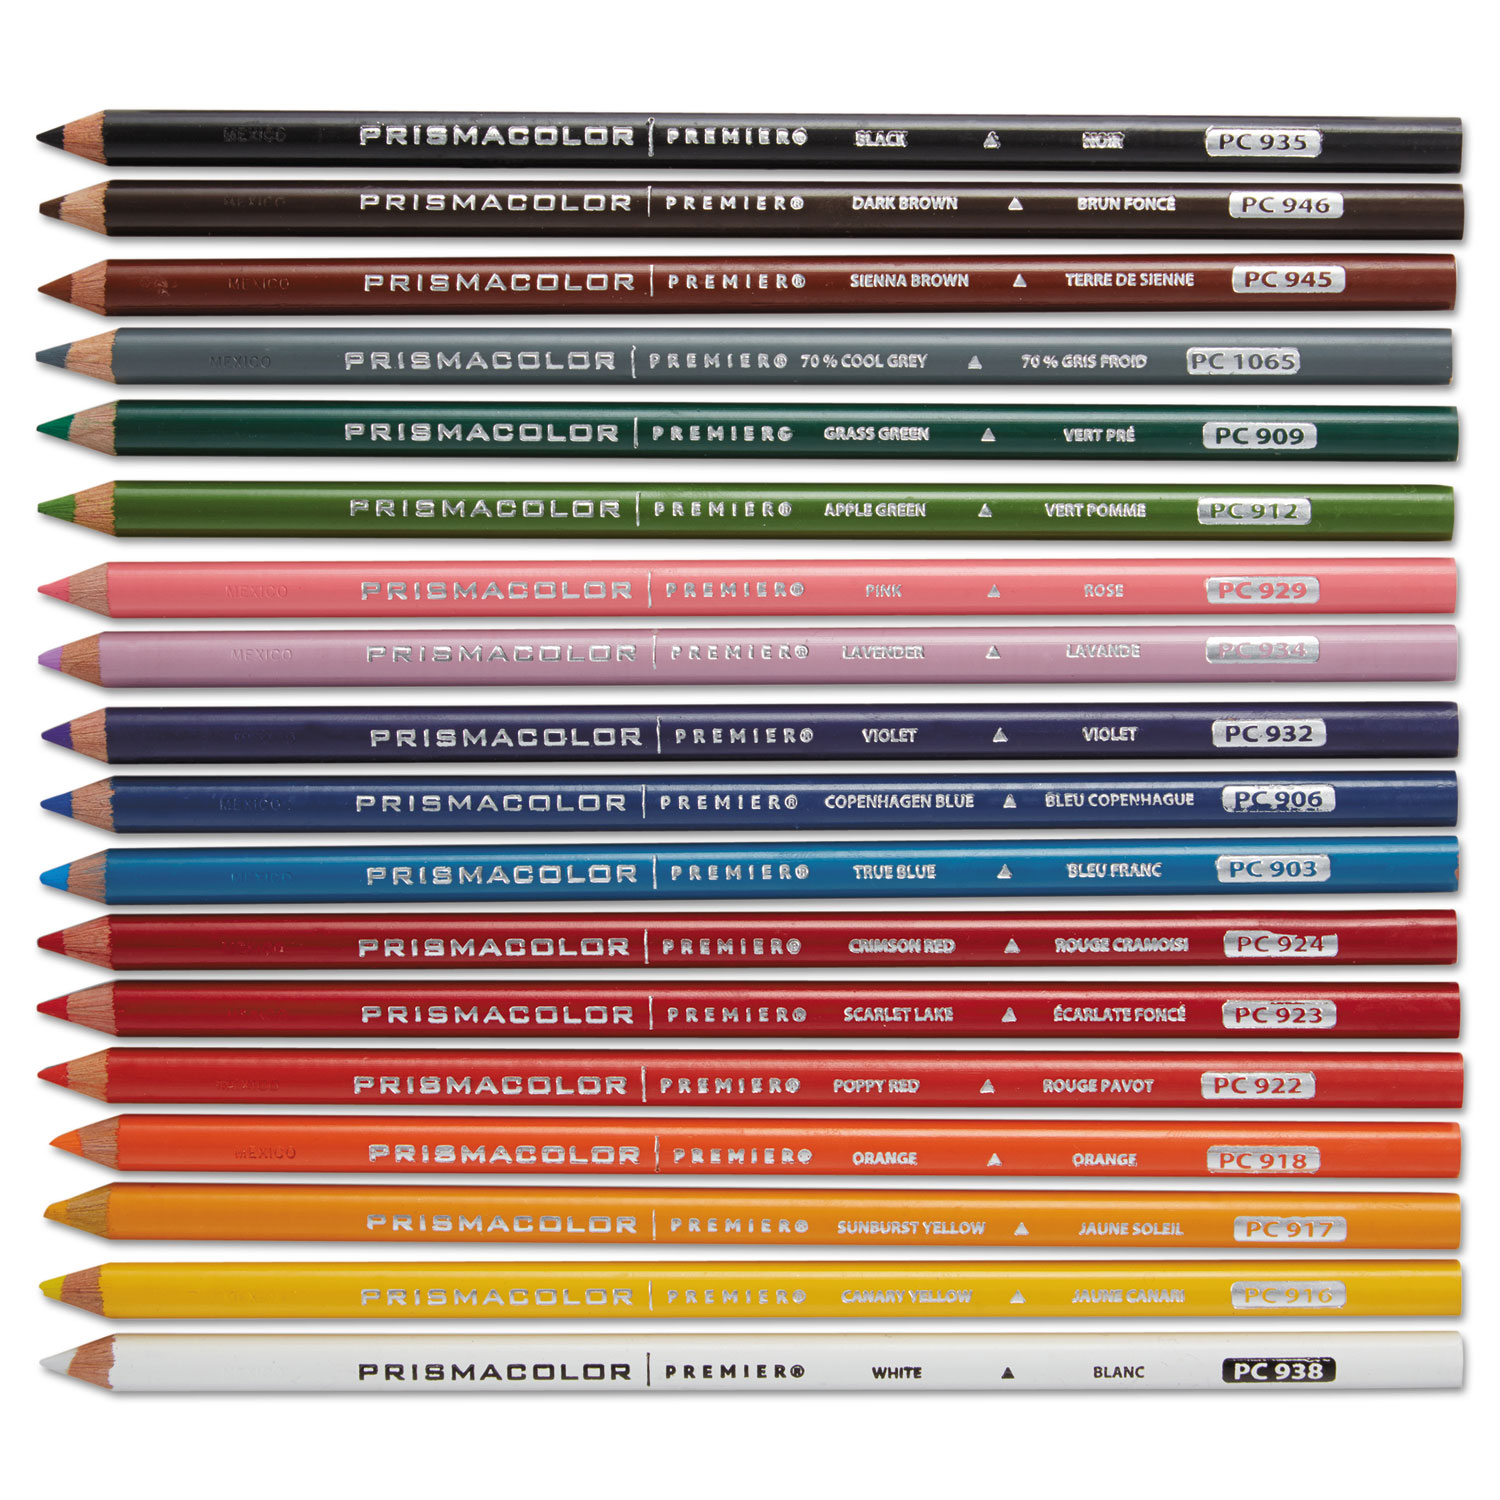 Premier Colored Pencil, 3 mm, 2B (#1), White Lead, White Barrel, Dozen